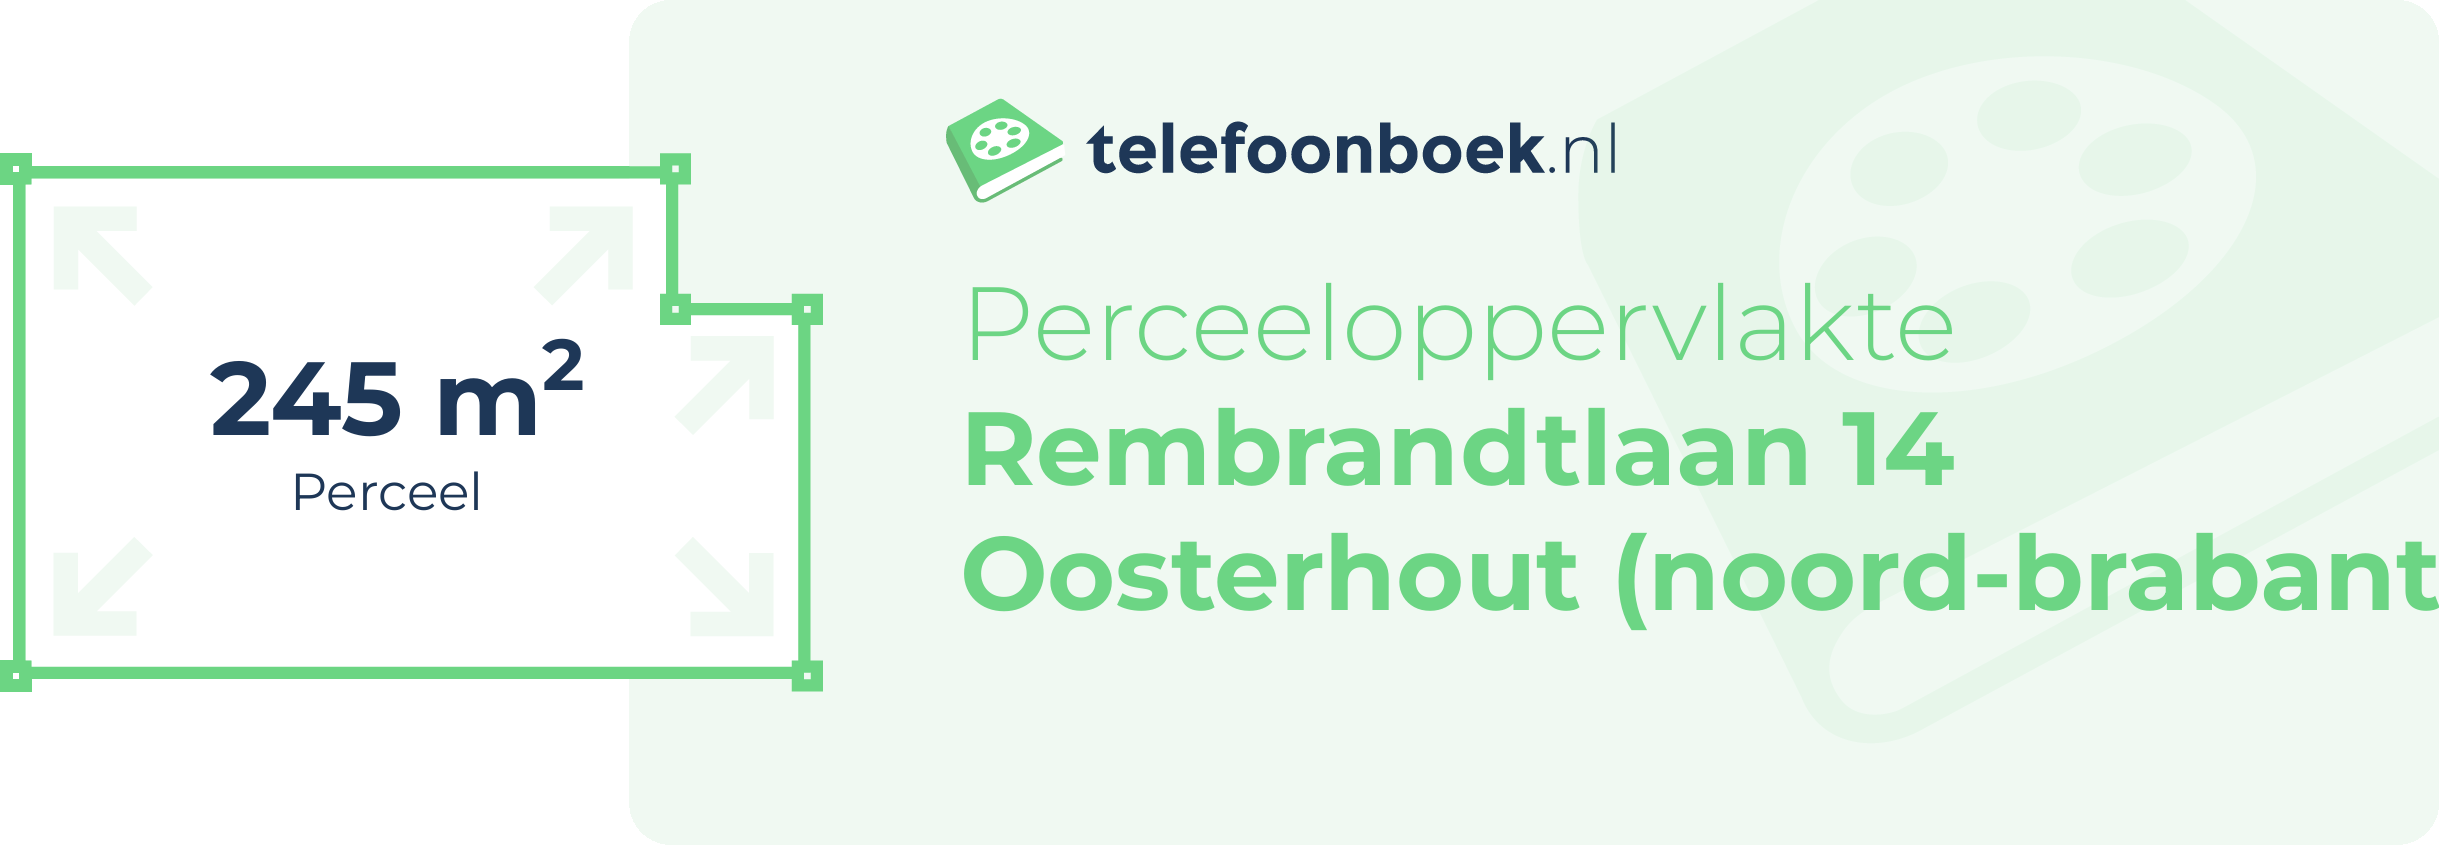 Perceeloppervlakte Rembrandtlaan 14 Oosterhout (Noord-Brabant)